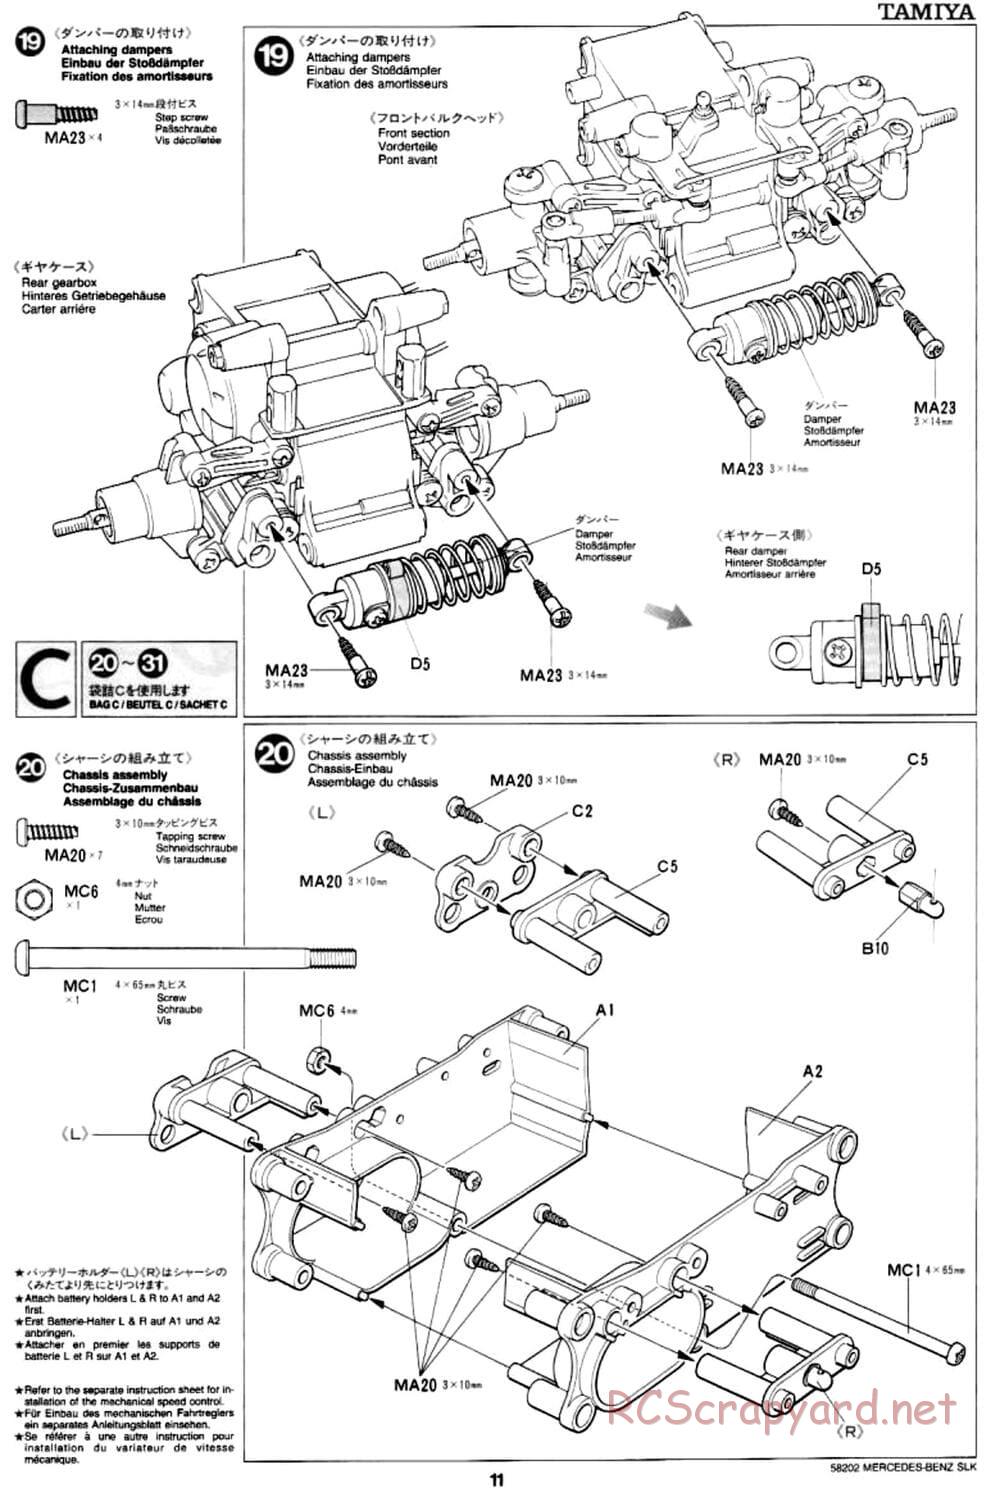 Tamiya - Mercedes-Benz SLK - M02L Chassis - Manual - Page 11